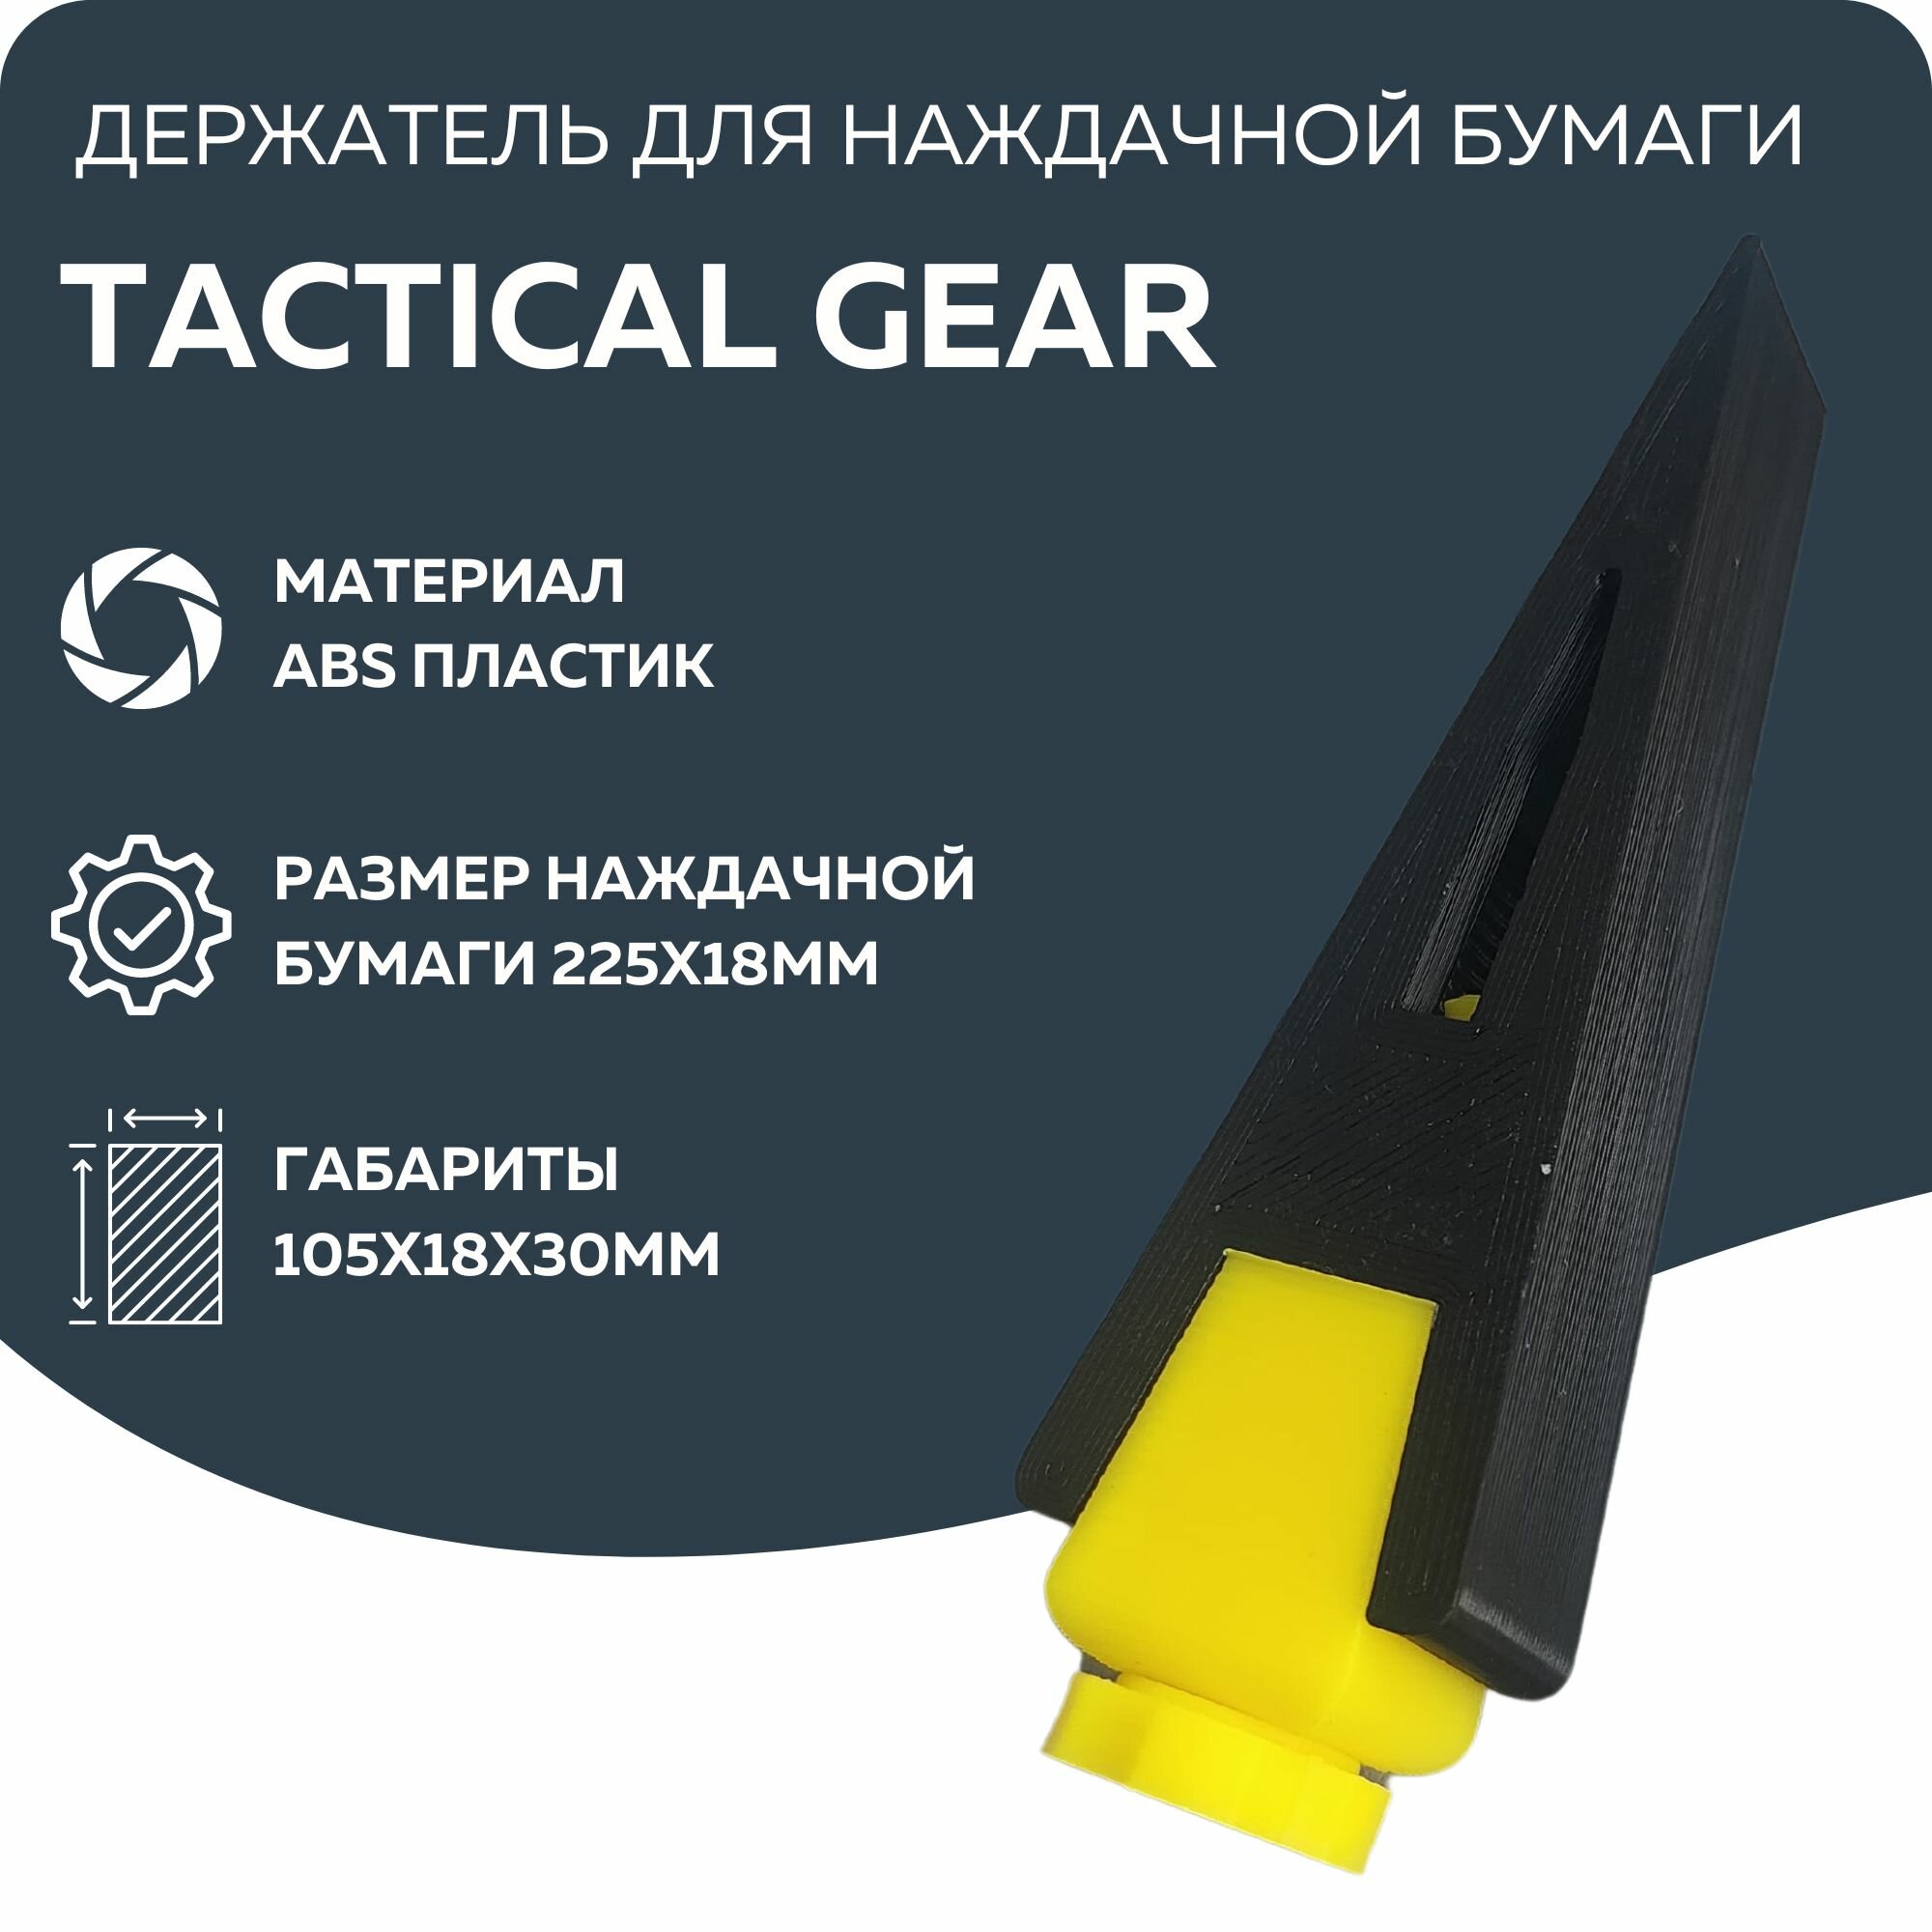 Держатель для наждачной бумаги размер 90*18мм для полировки дерева пластика кожи металла для кузовных работ Tactical Gear